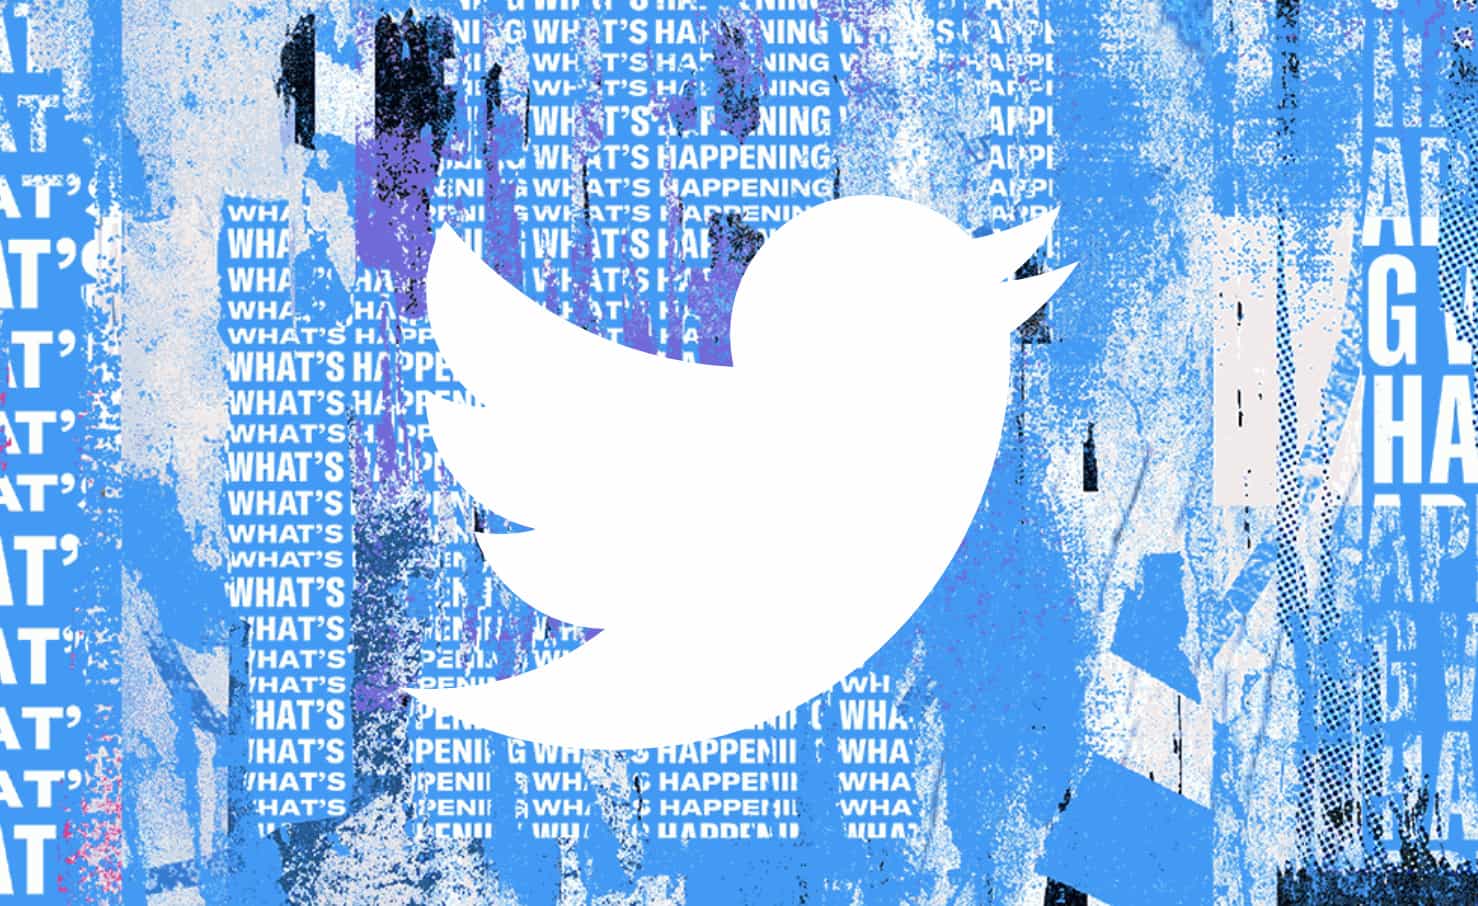 Com fundo azul, imagem mostra o passarinho que representa o logotipo do Twitter na cor branca